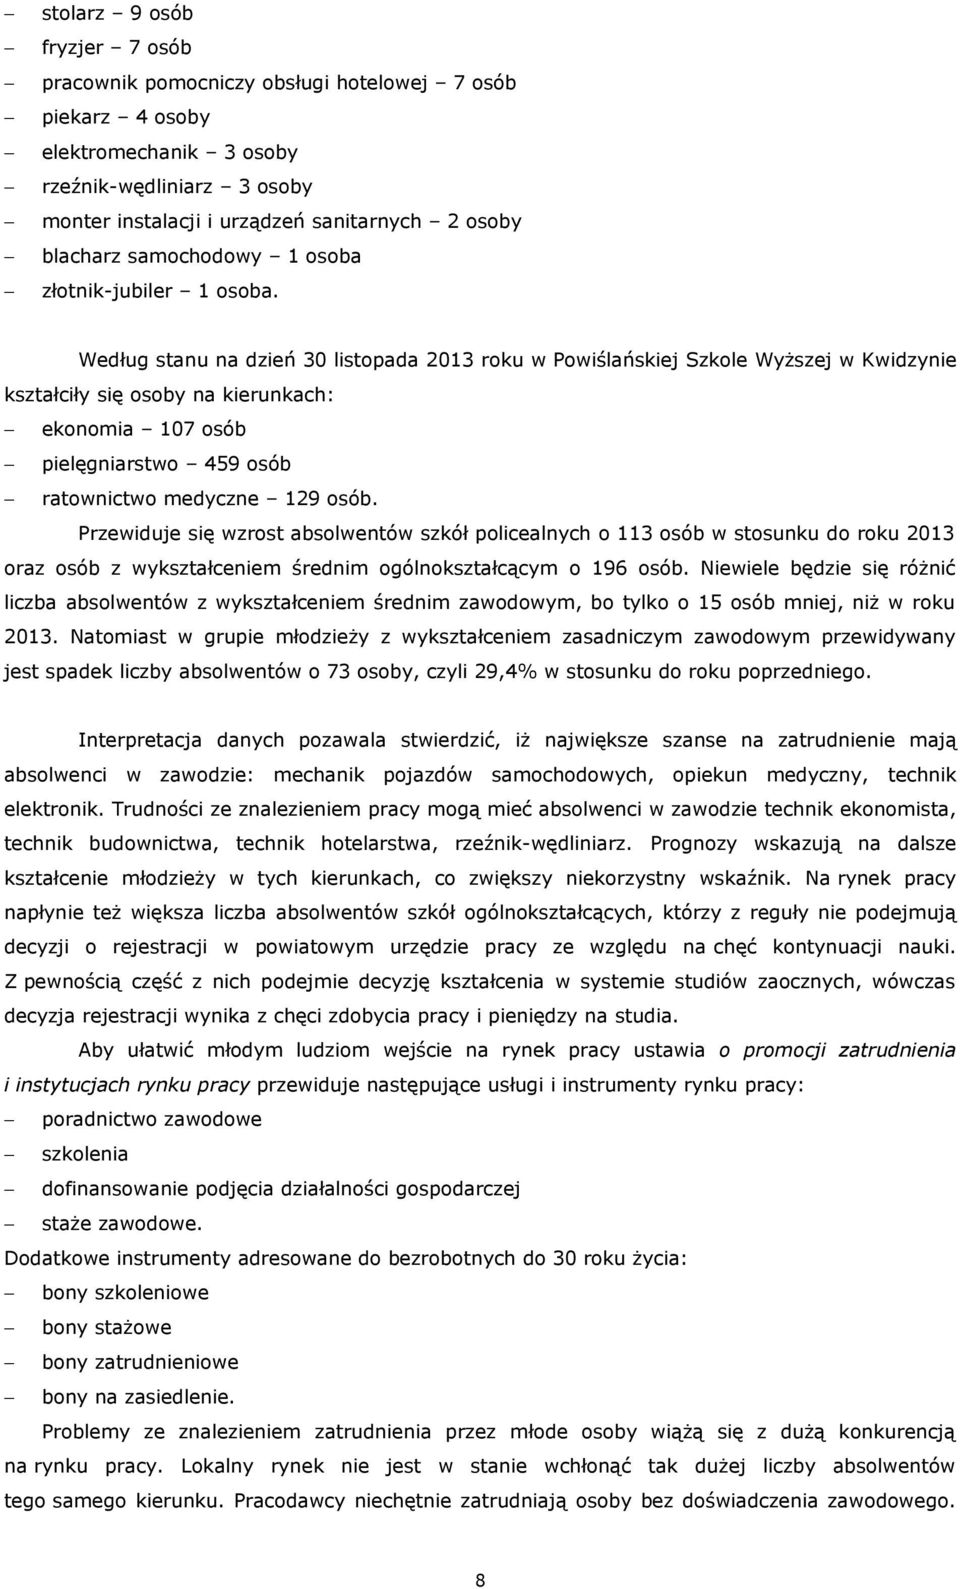 Według stanu na dzień 30 listopada 2013 roku w Powiślańskiej Szkole Wyższej kształciły się osoby na kierunkach: ekonomia 107 osób pielęgniarstwo 459 osób ratownictwo medyczne 129 osób.